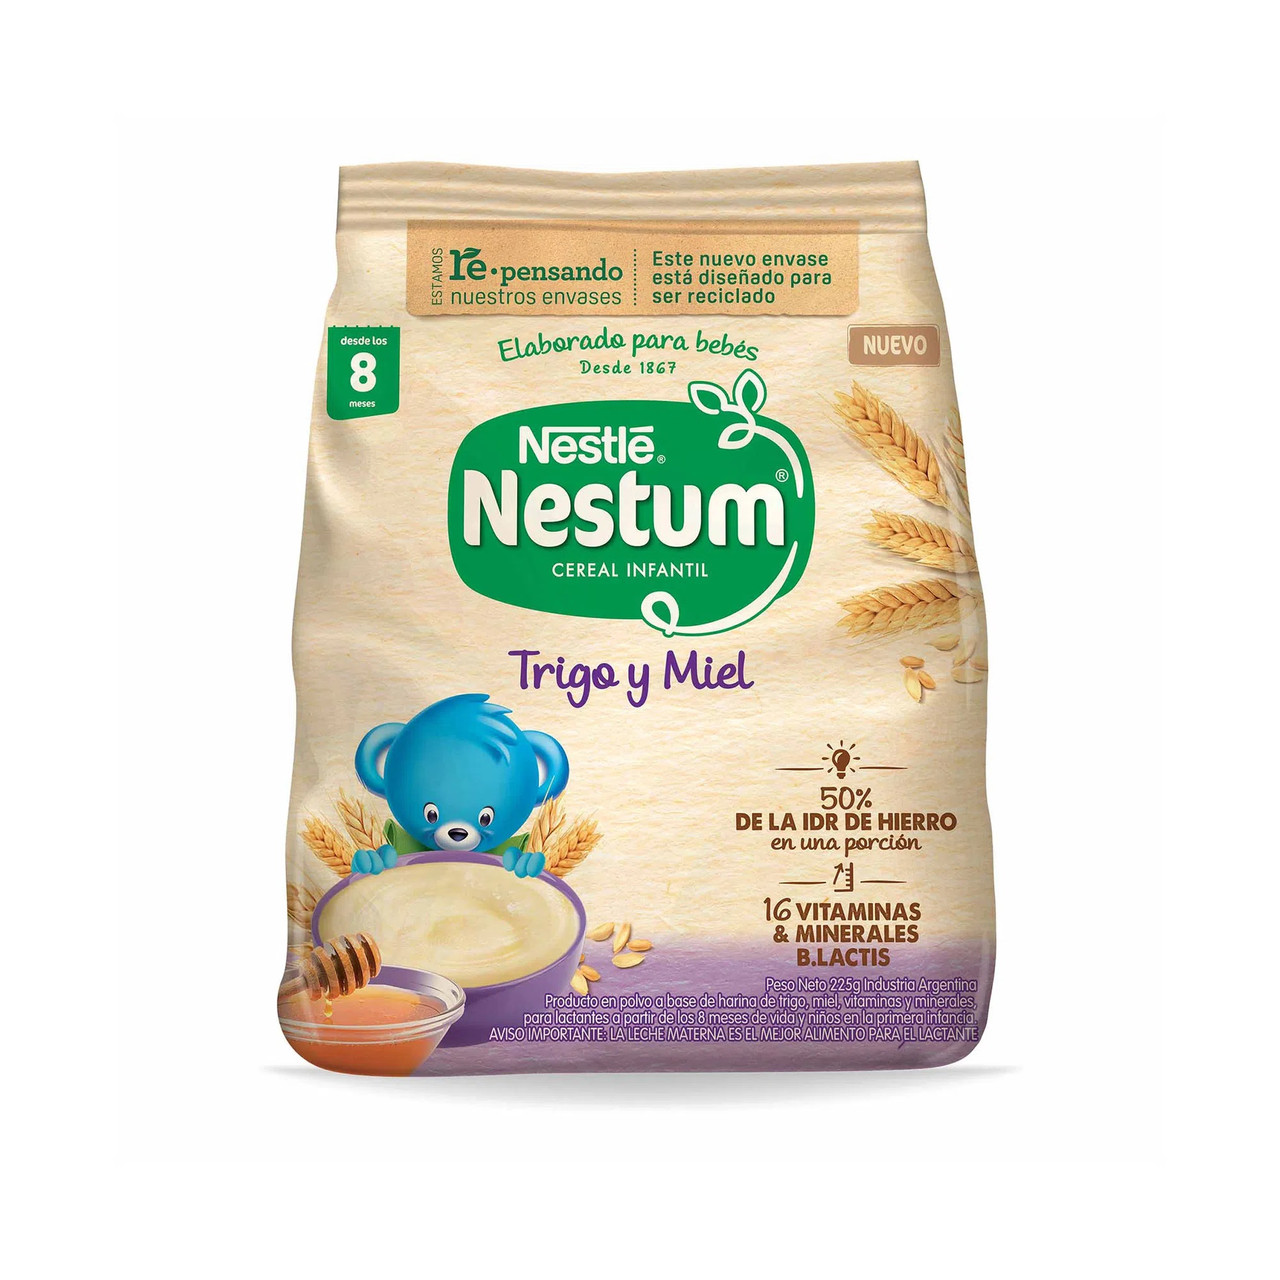 4 pack) Nestle Nestum Honey Wheat Cereal 